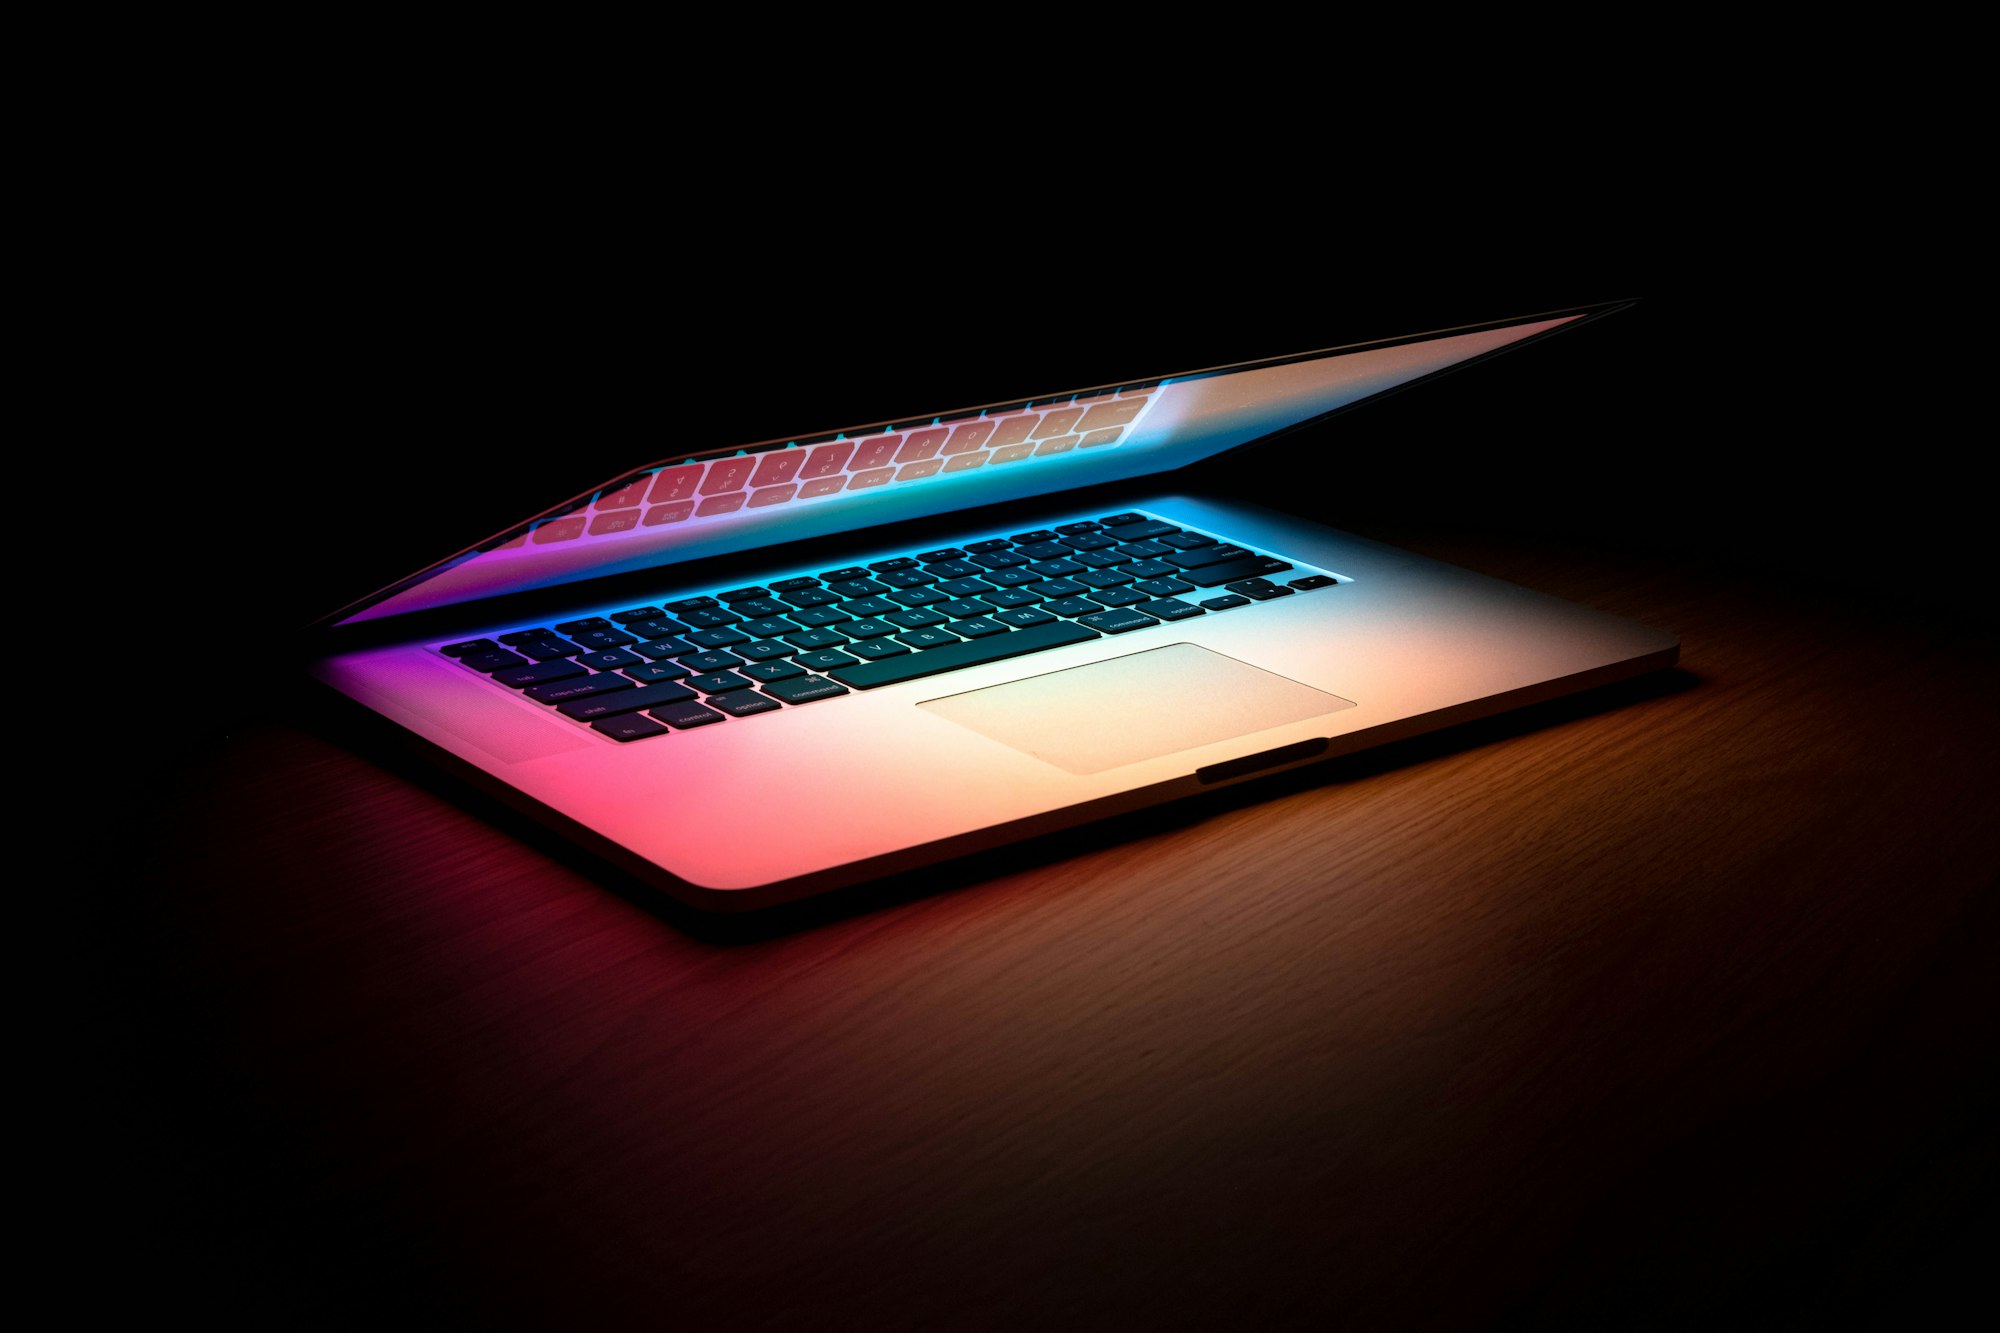 Glowing Laptop